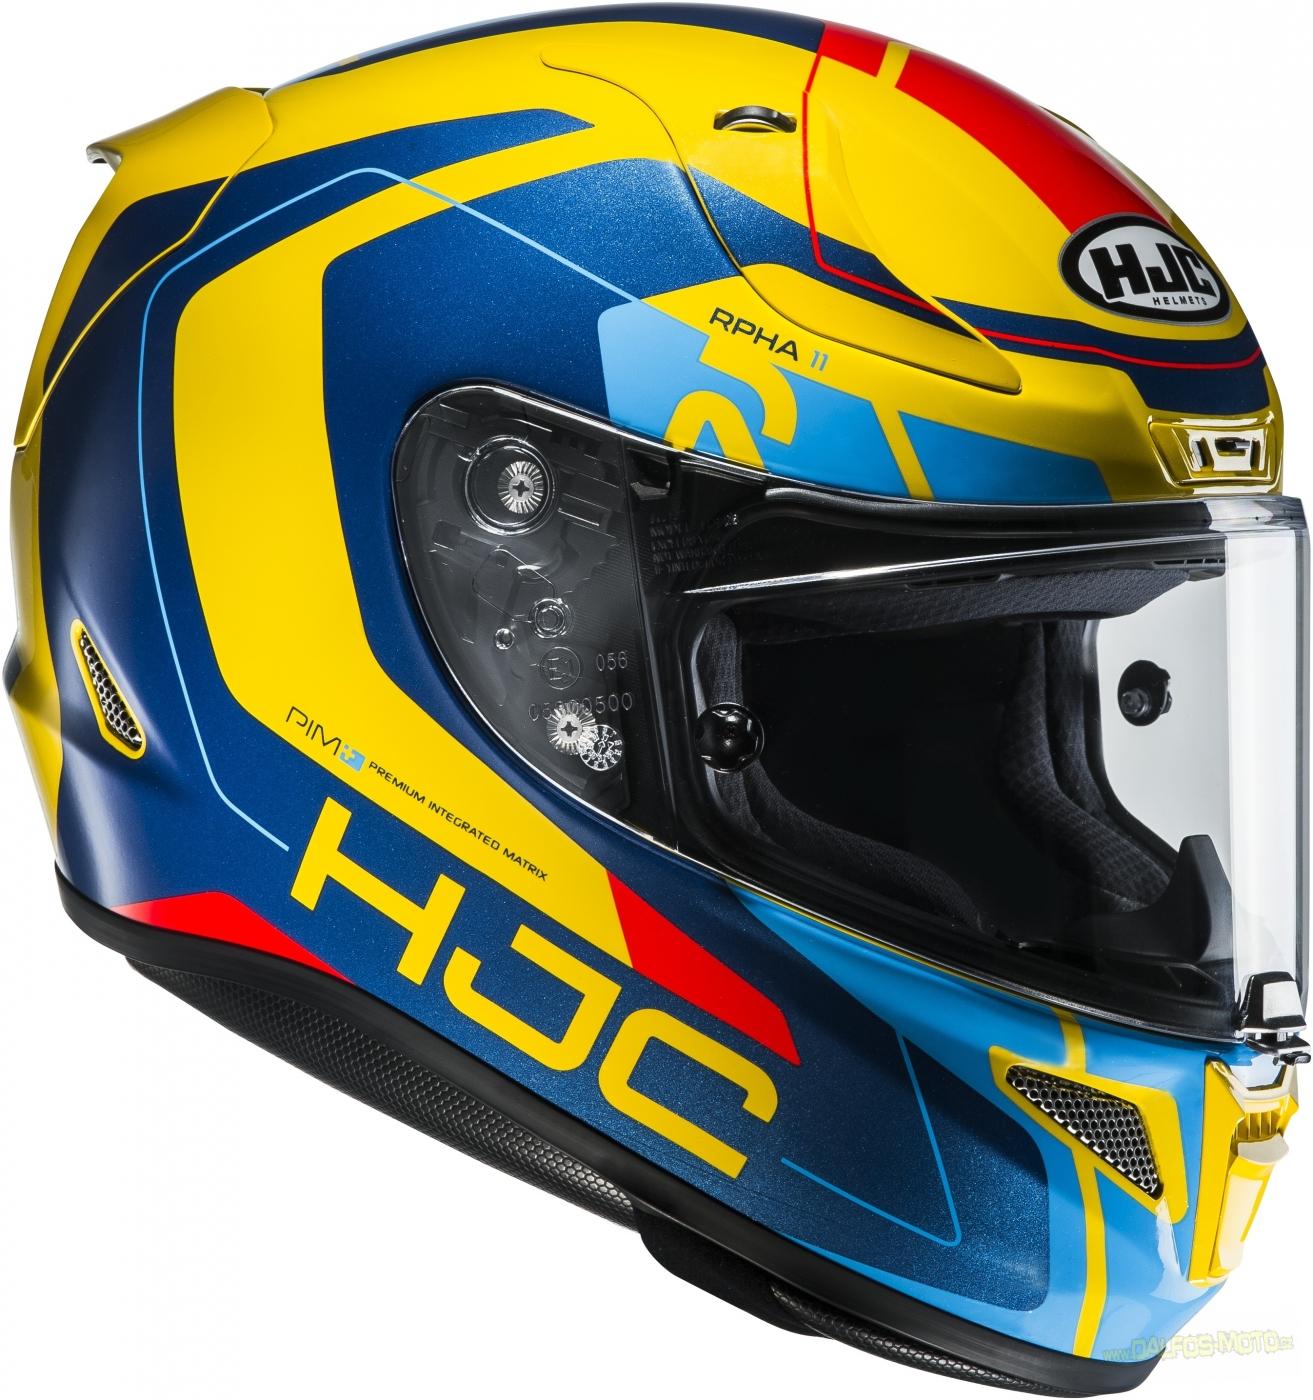 Продажа Шлем HJC RPHA 11 CHAKRI MC23 (пинлок в подарок)